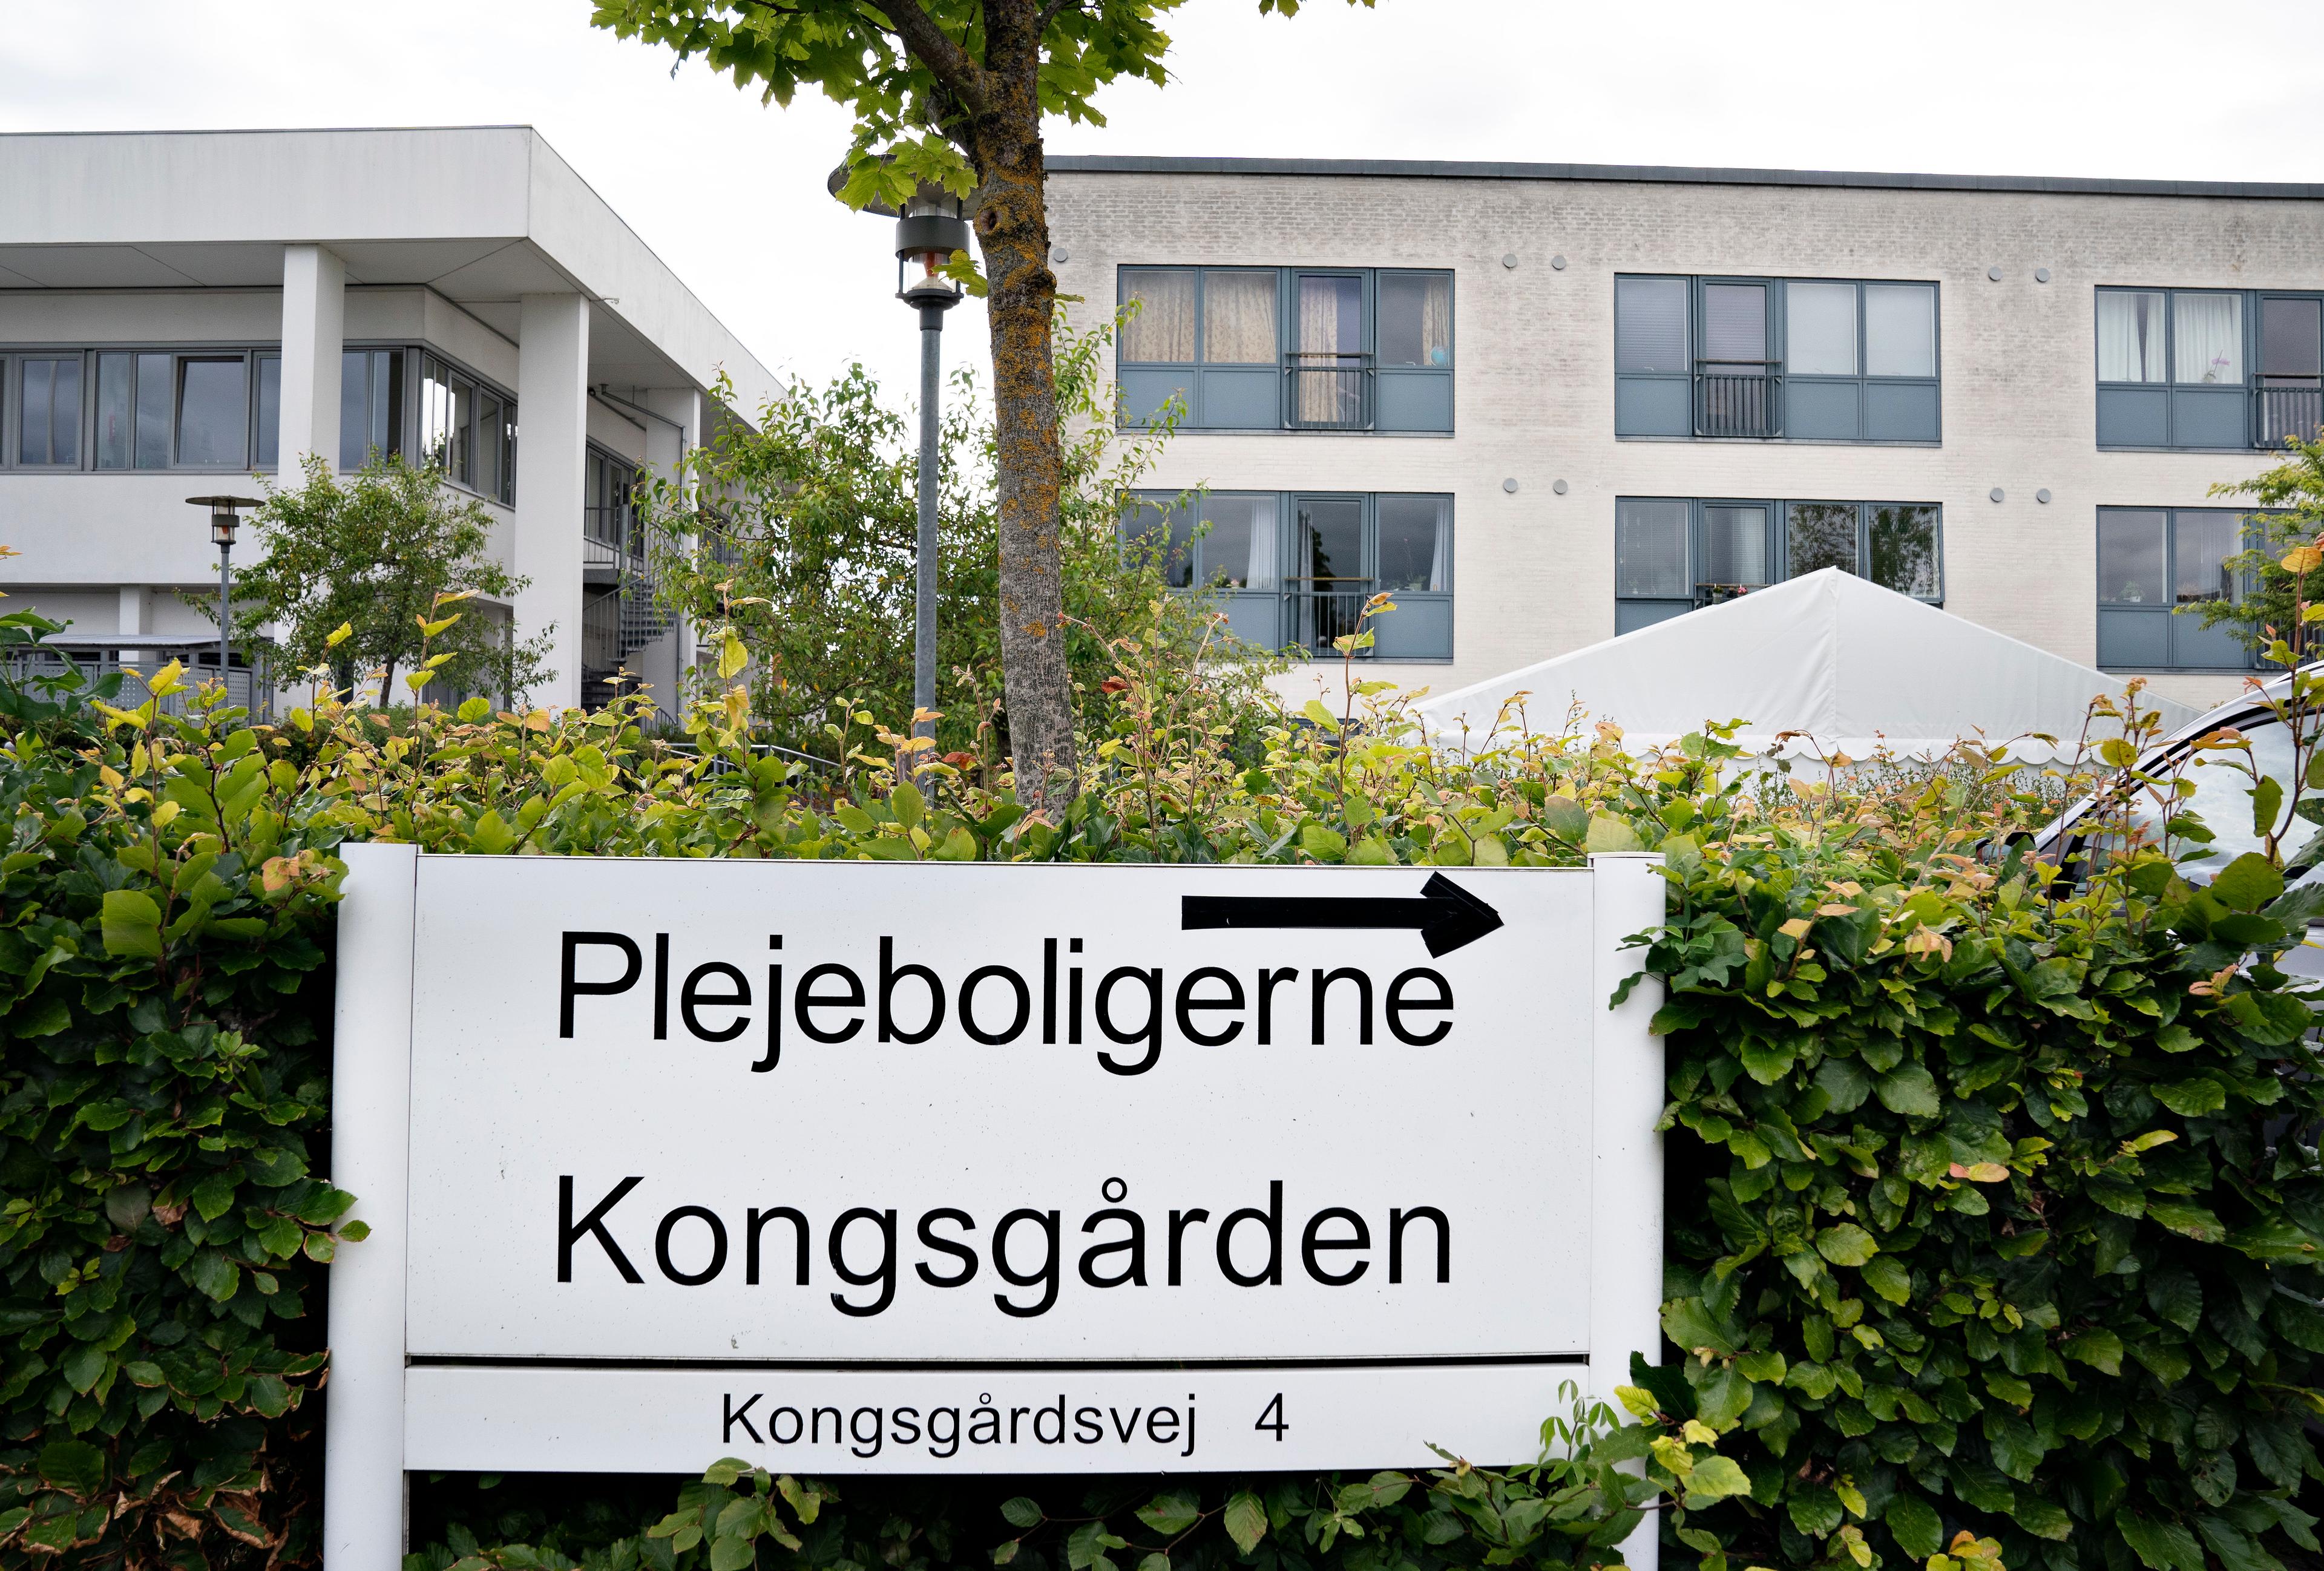 En dokumentar, optaget med skjult kamera, viste kritiske forhold på Plejecenter Kongsgården.